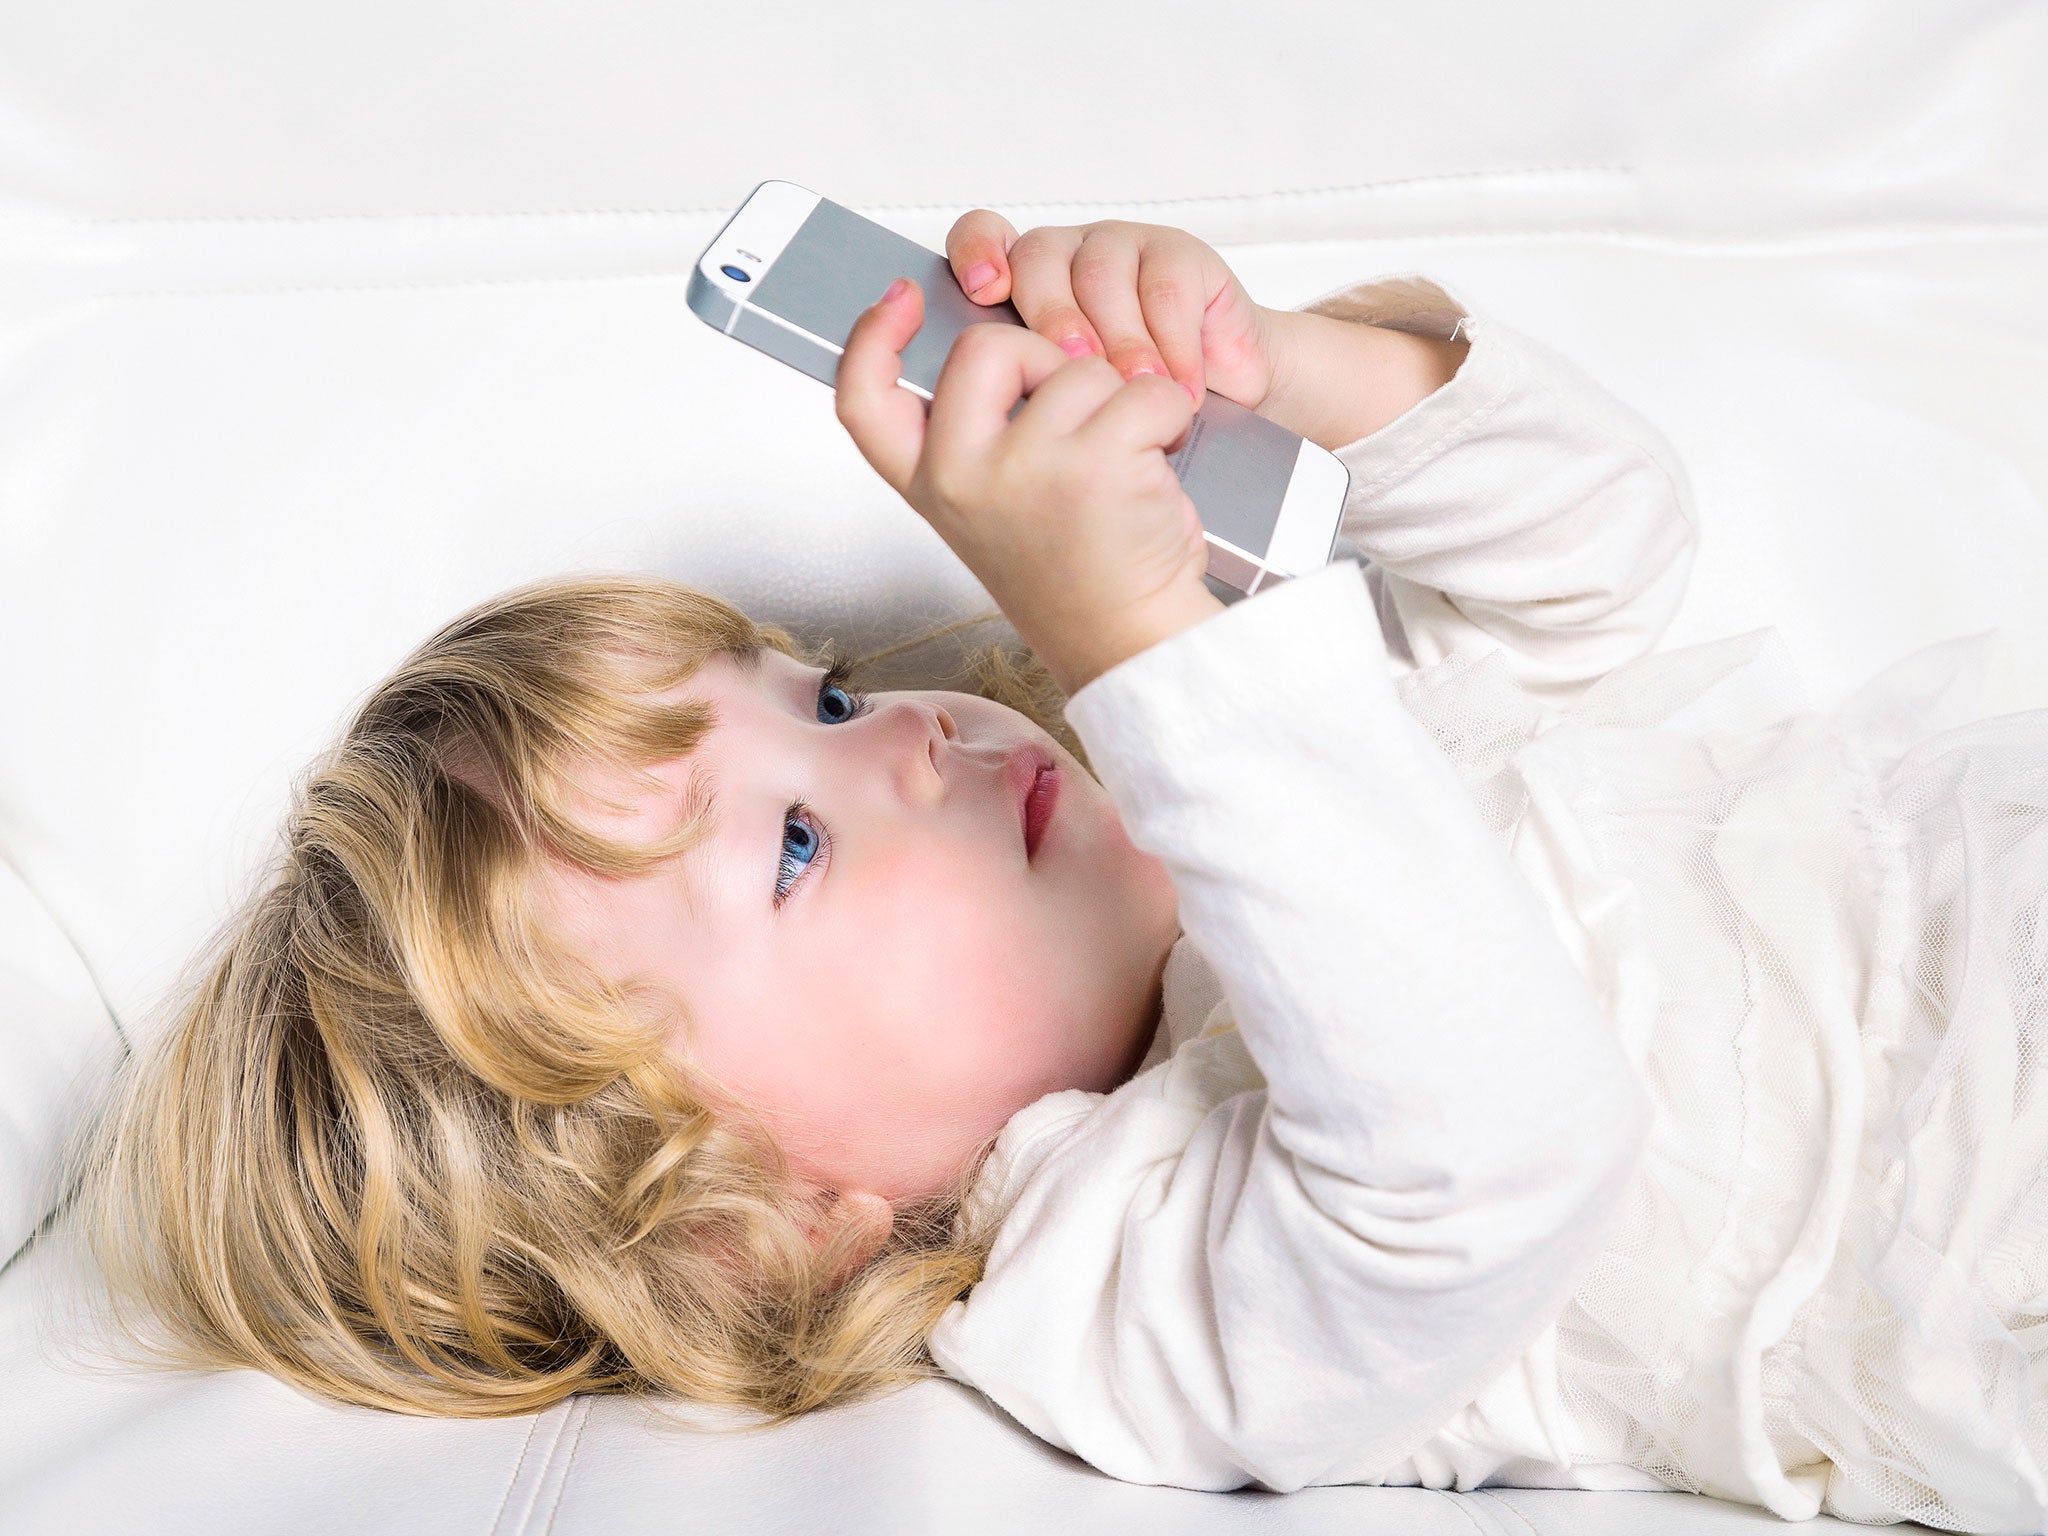 11-smartphone-toddler-corbis.jpg